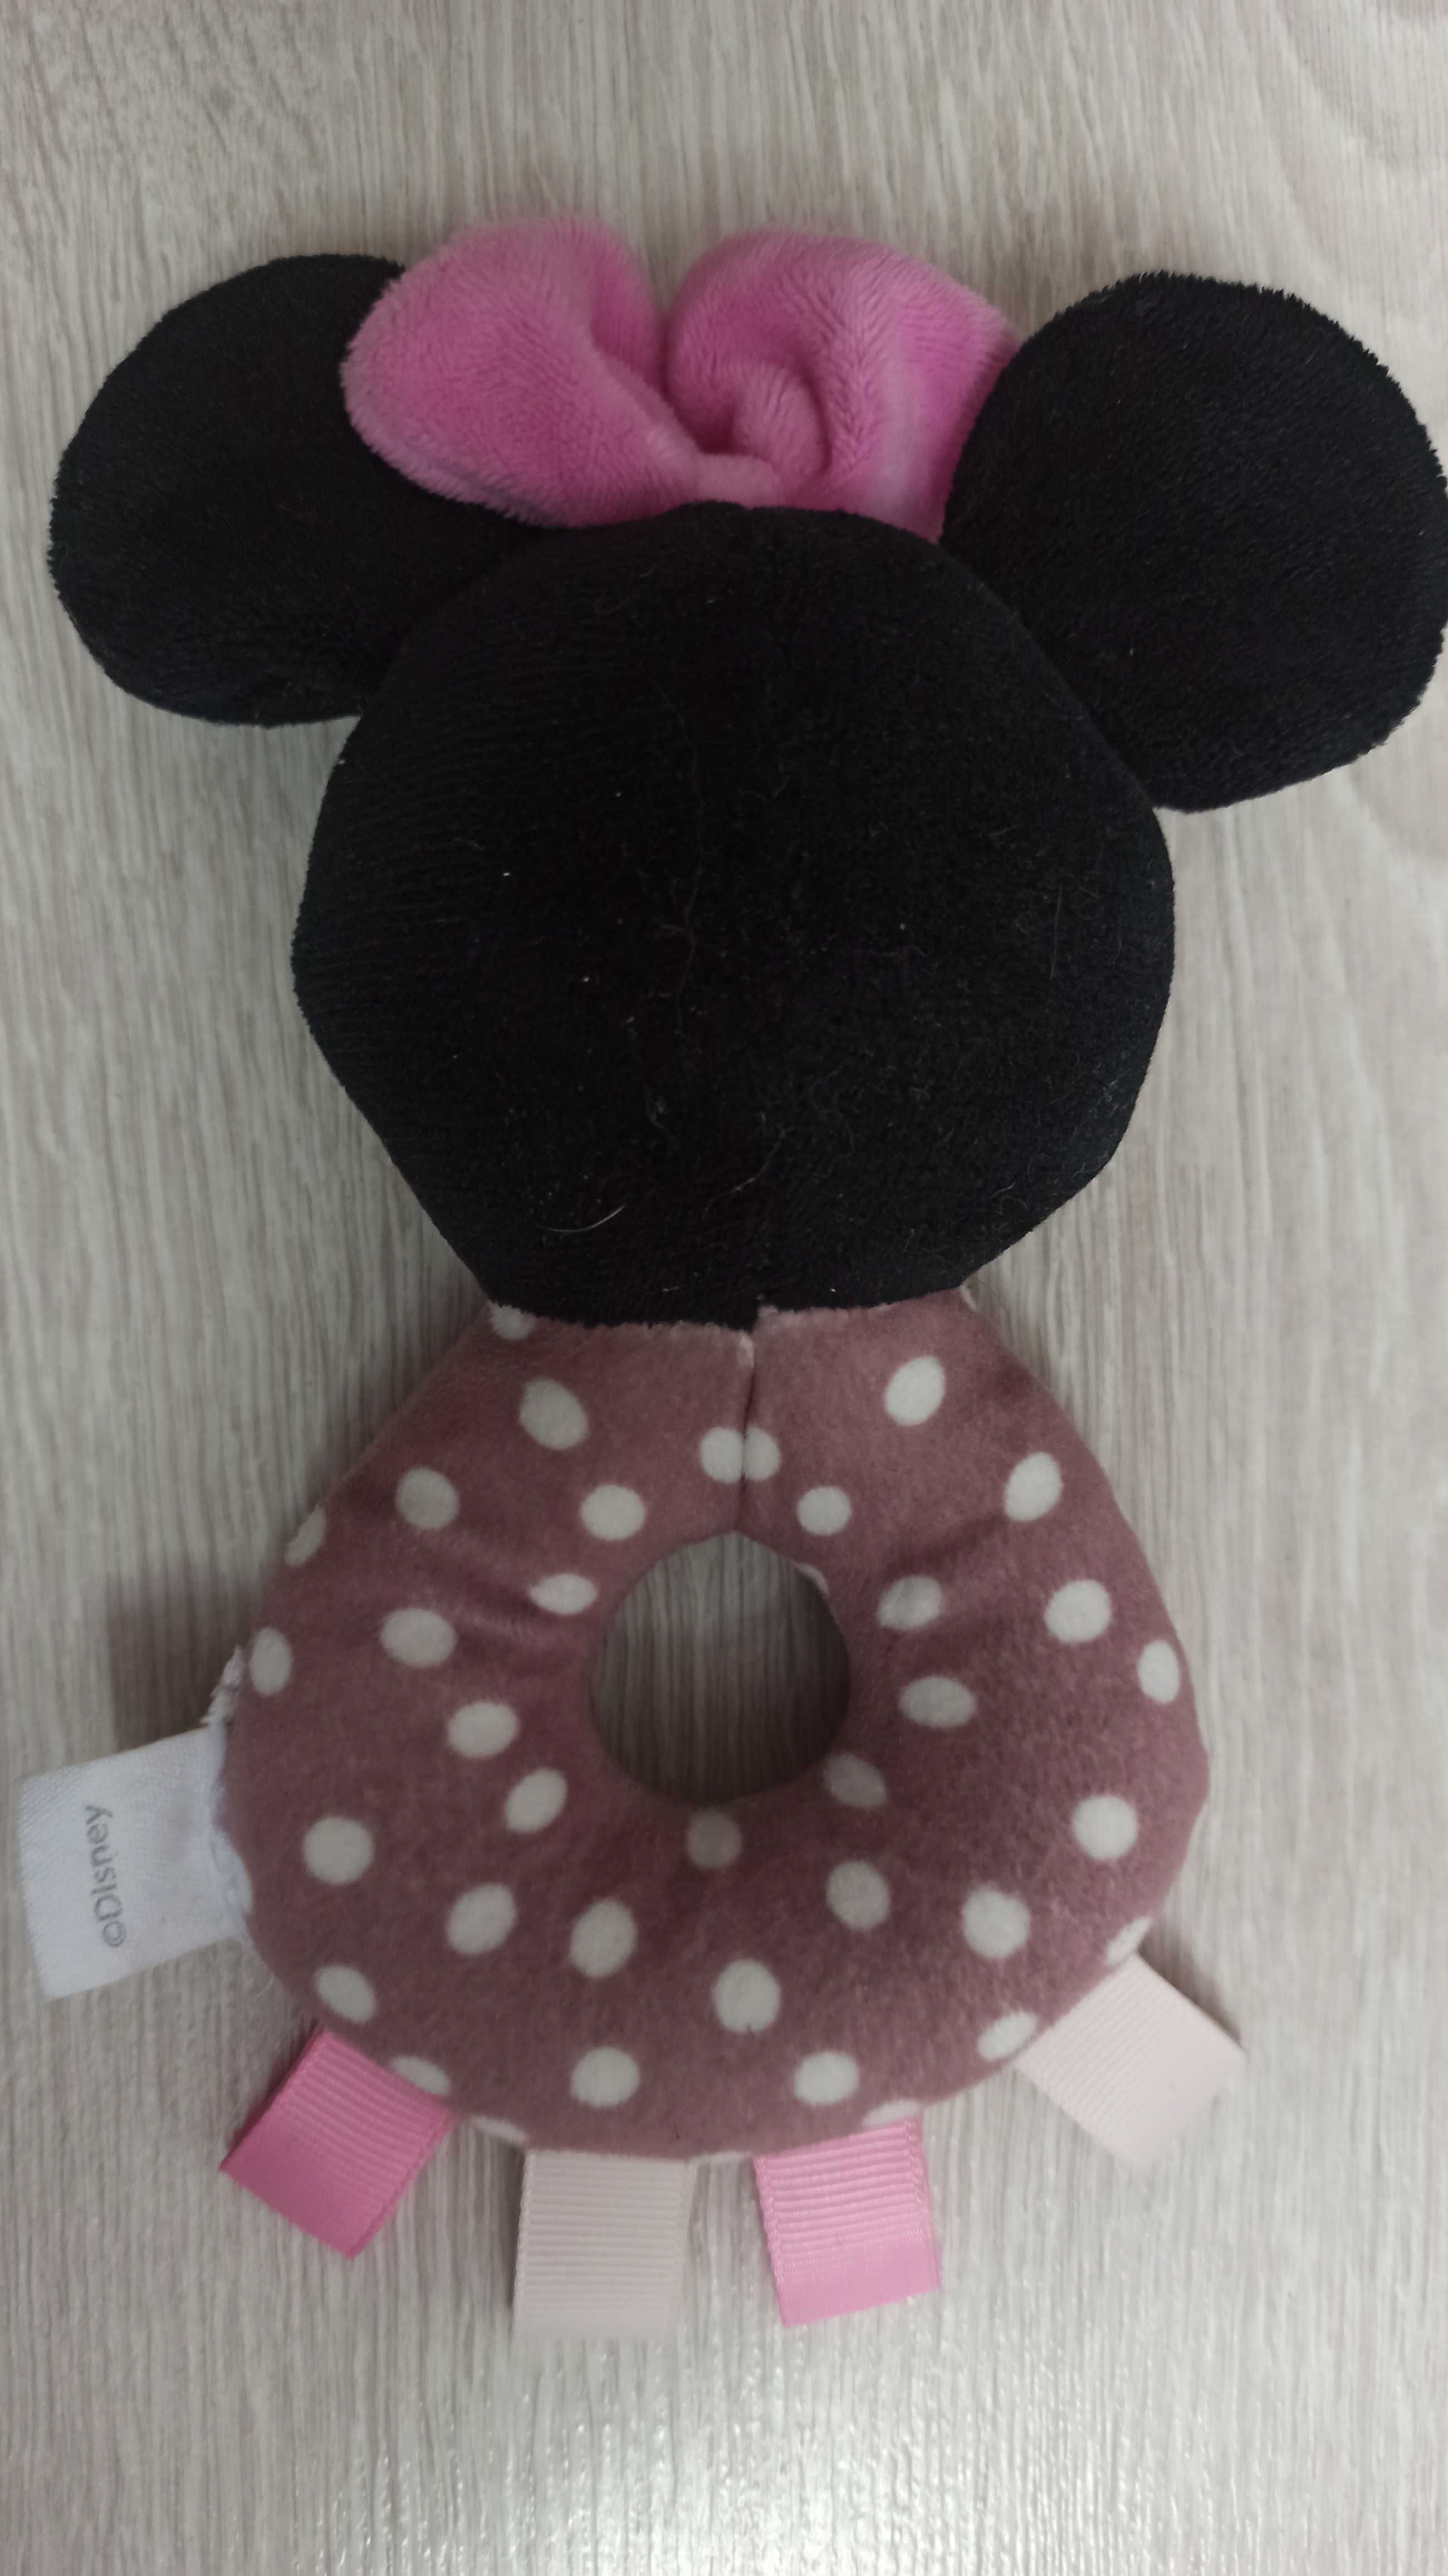 Zabawka Disney, grzechotka dla dziecka myszka mickey mini